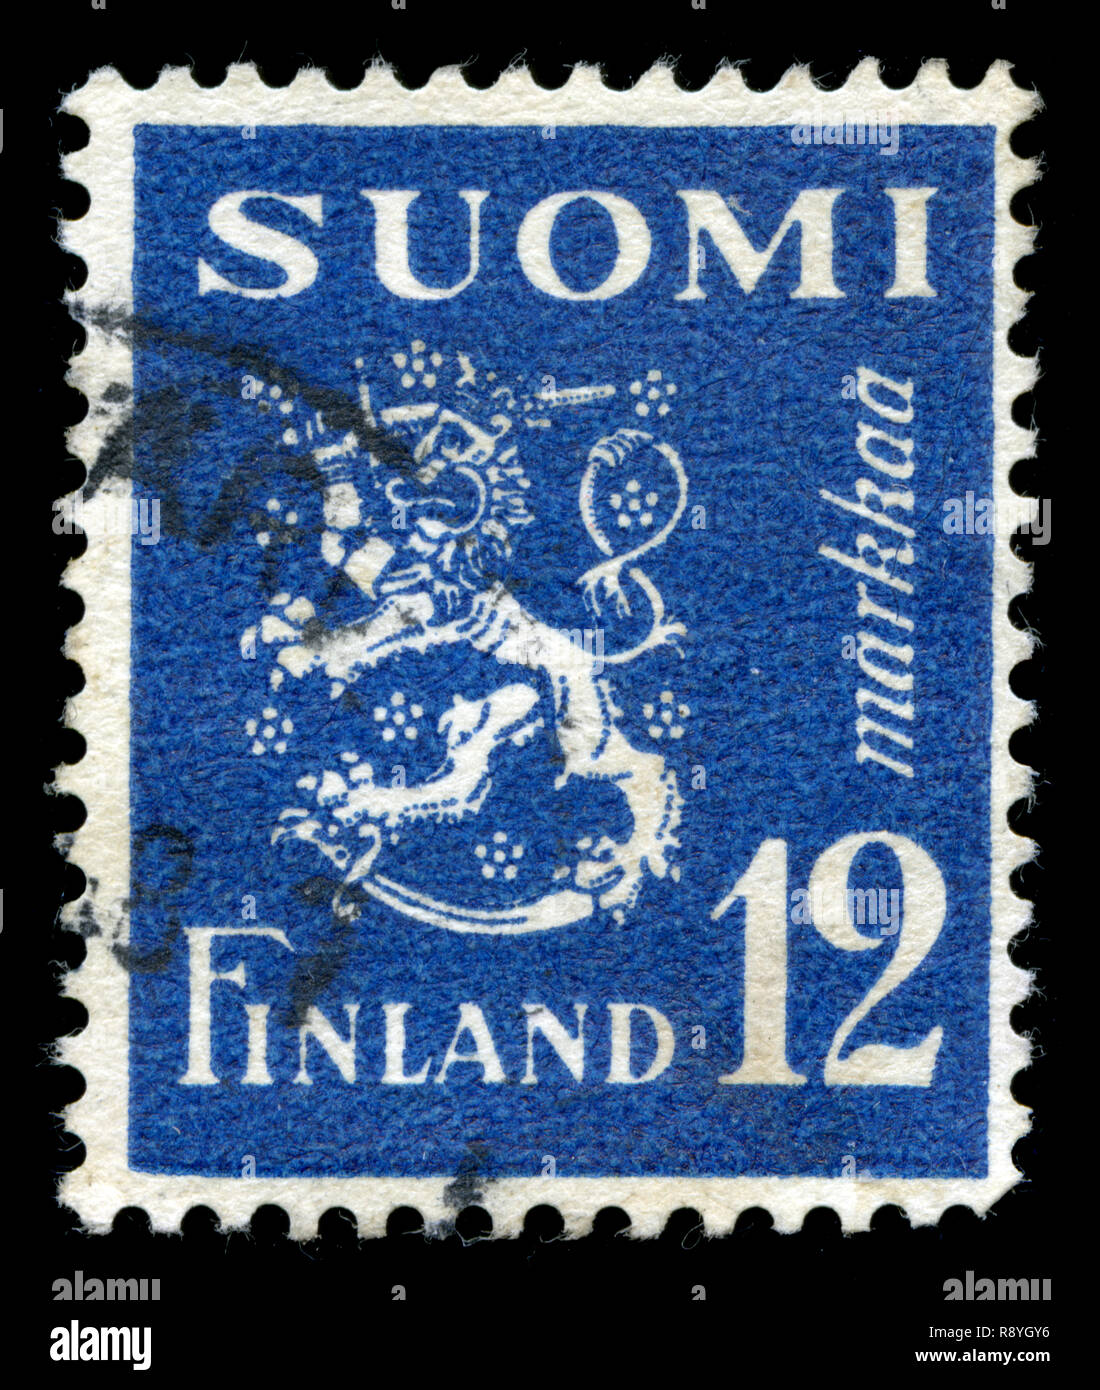 Timbre-poste de la Finlande dans le modèle 1930 Lion série émise en 1947 Banque D'Images